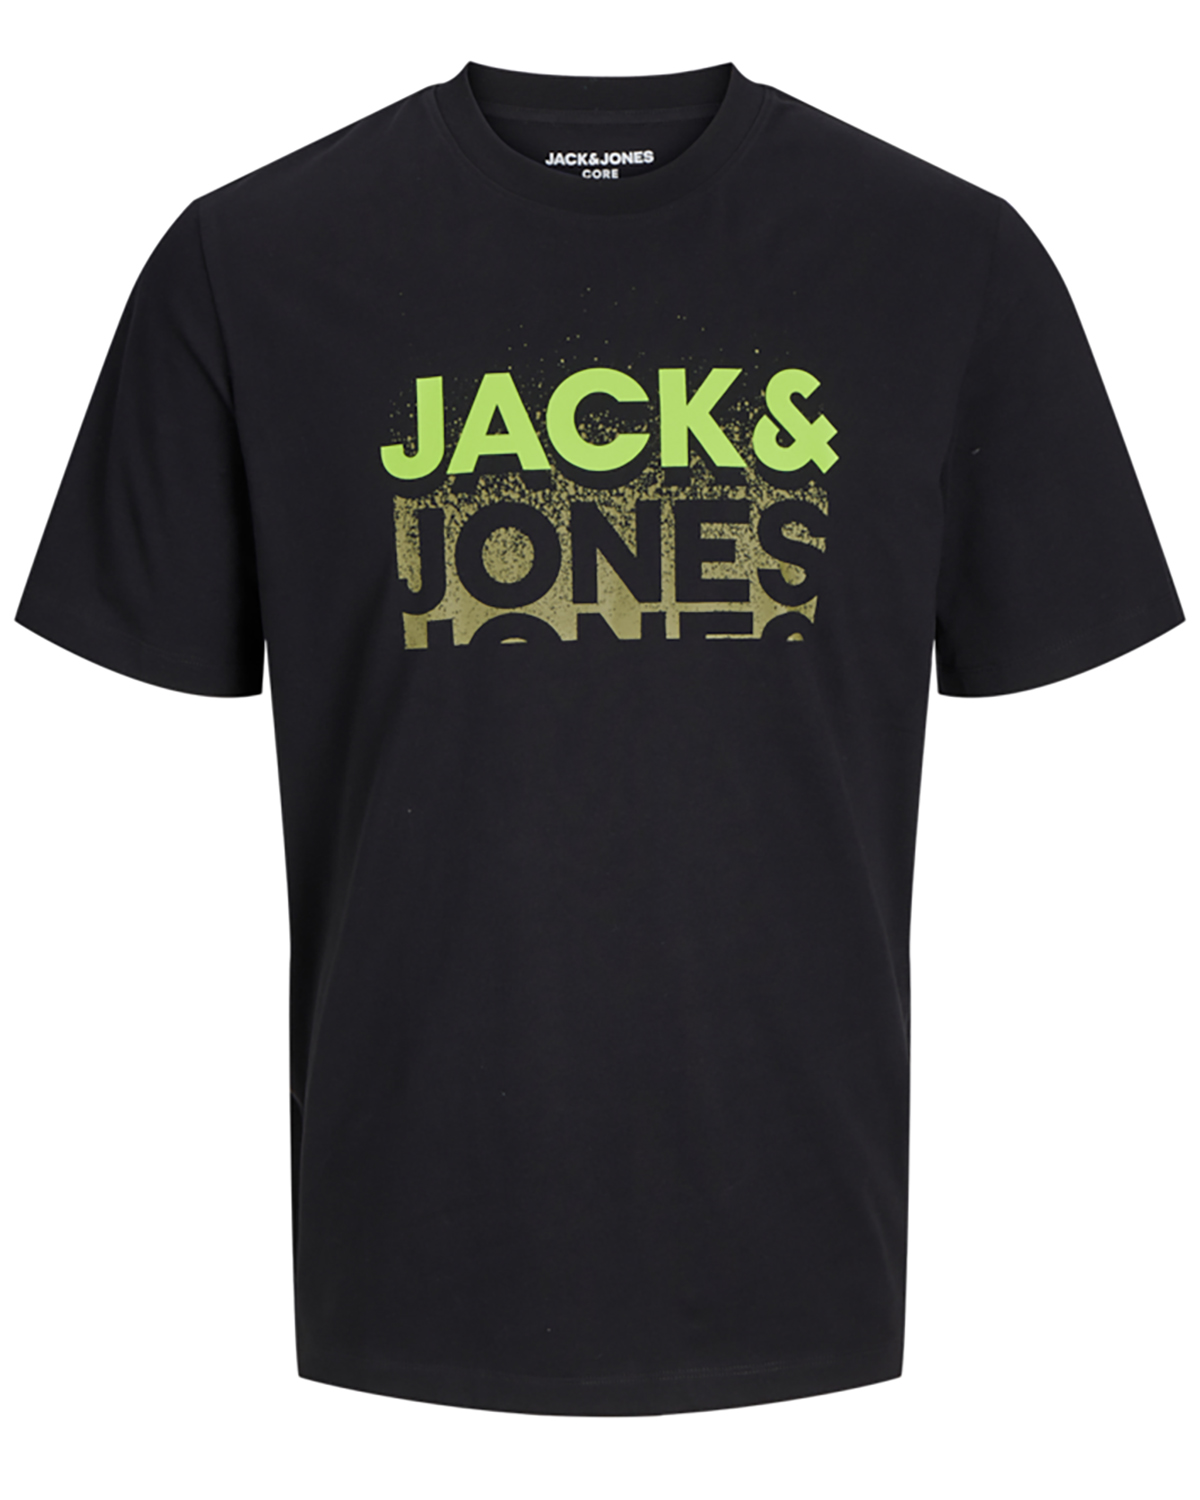 Se Jack & Jones t-shirt s/s, Gradient tee, sort - 188,L+,L hos Umame.dk